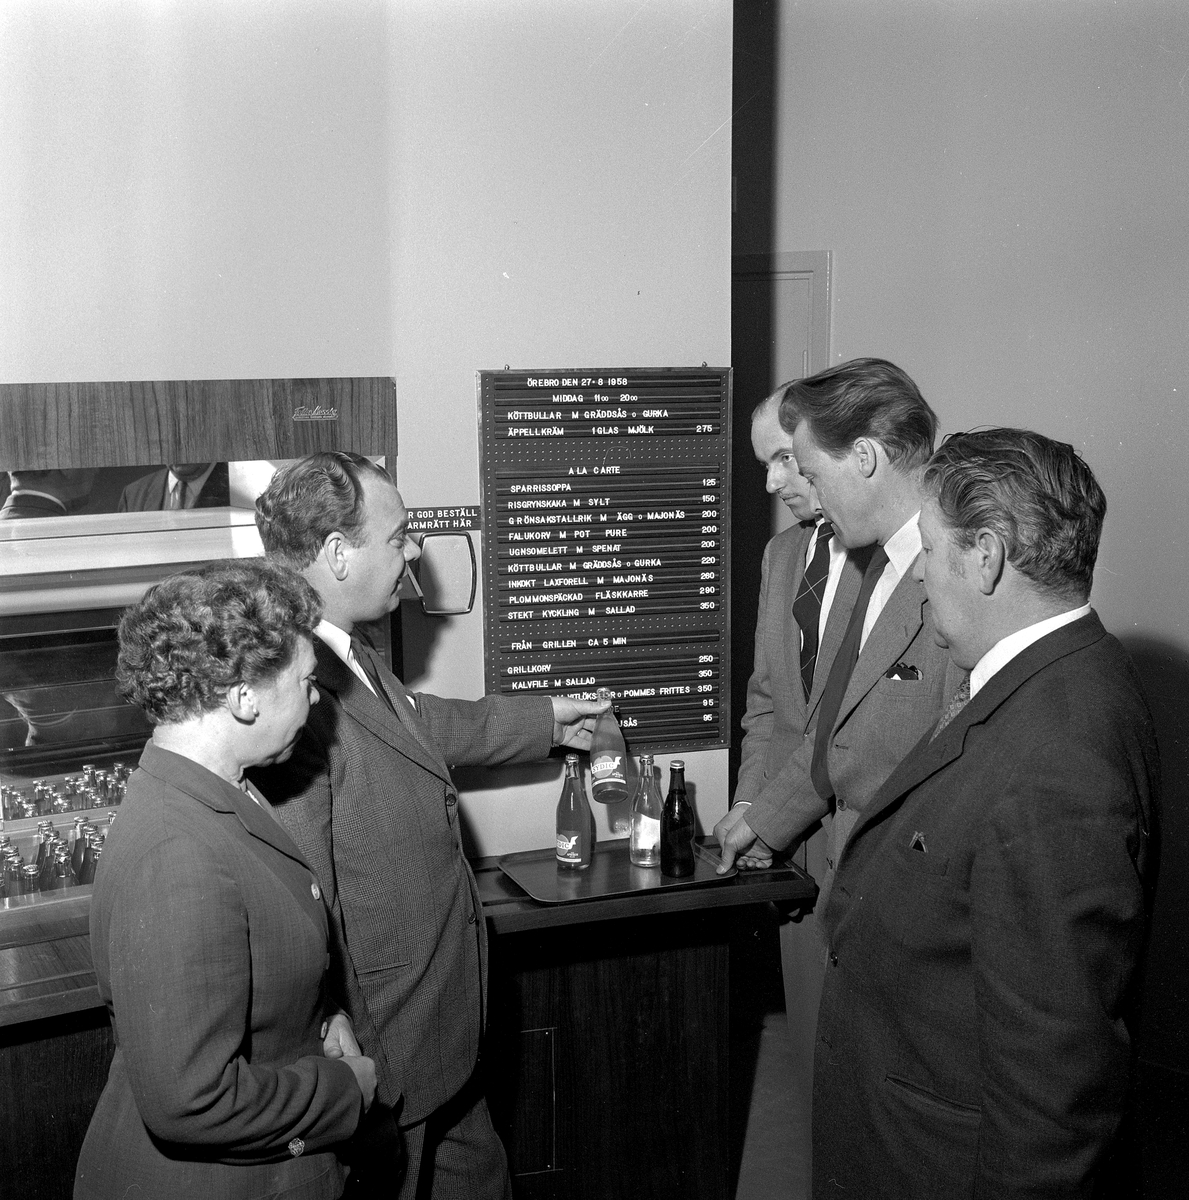 Våghusbaren invigs.
27 augusti 1958.